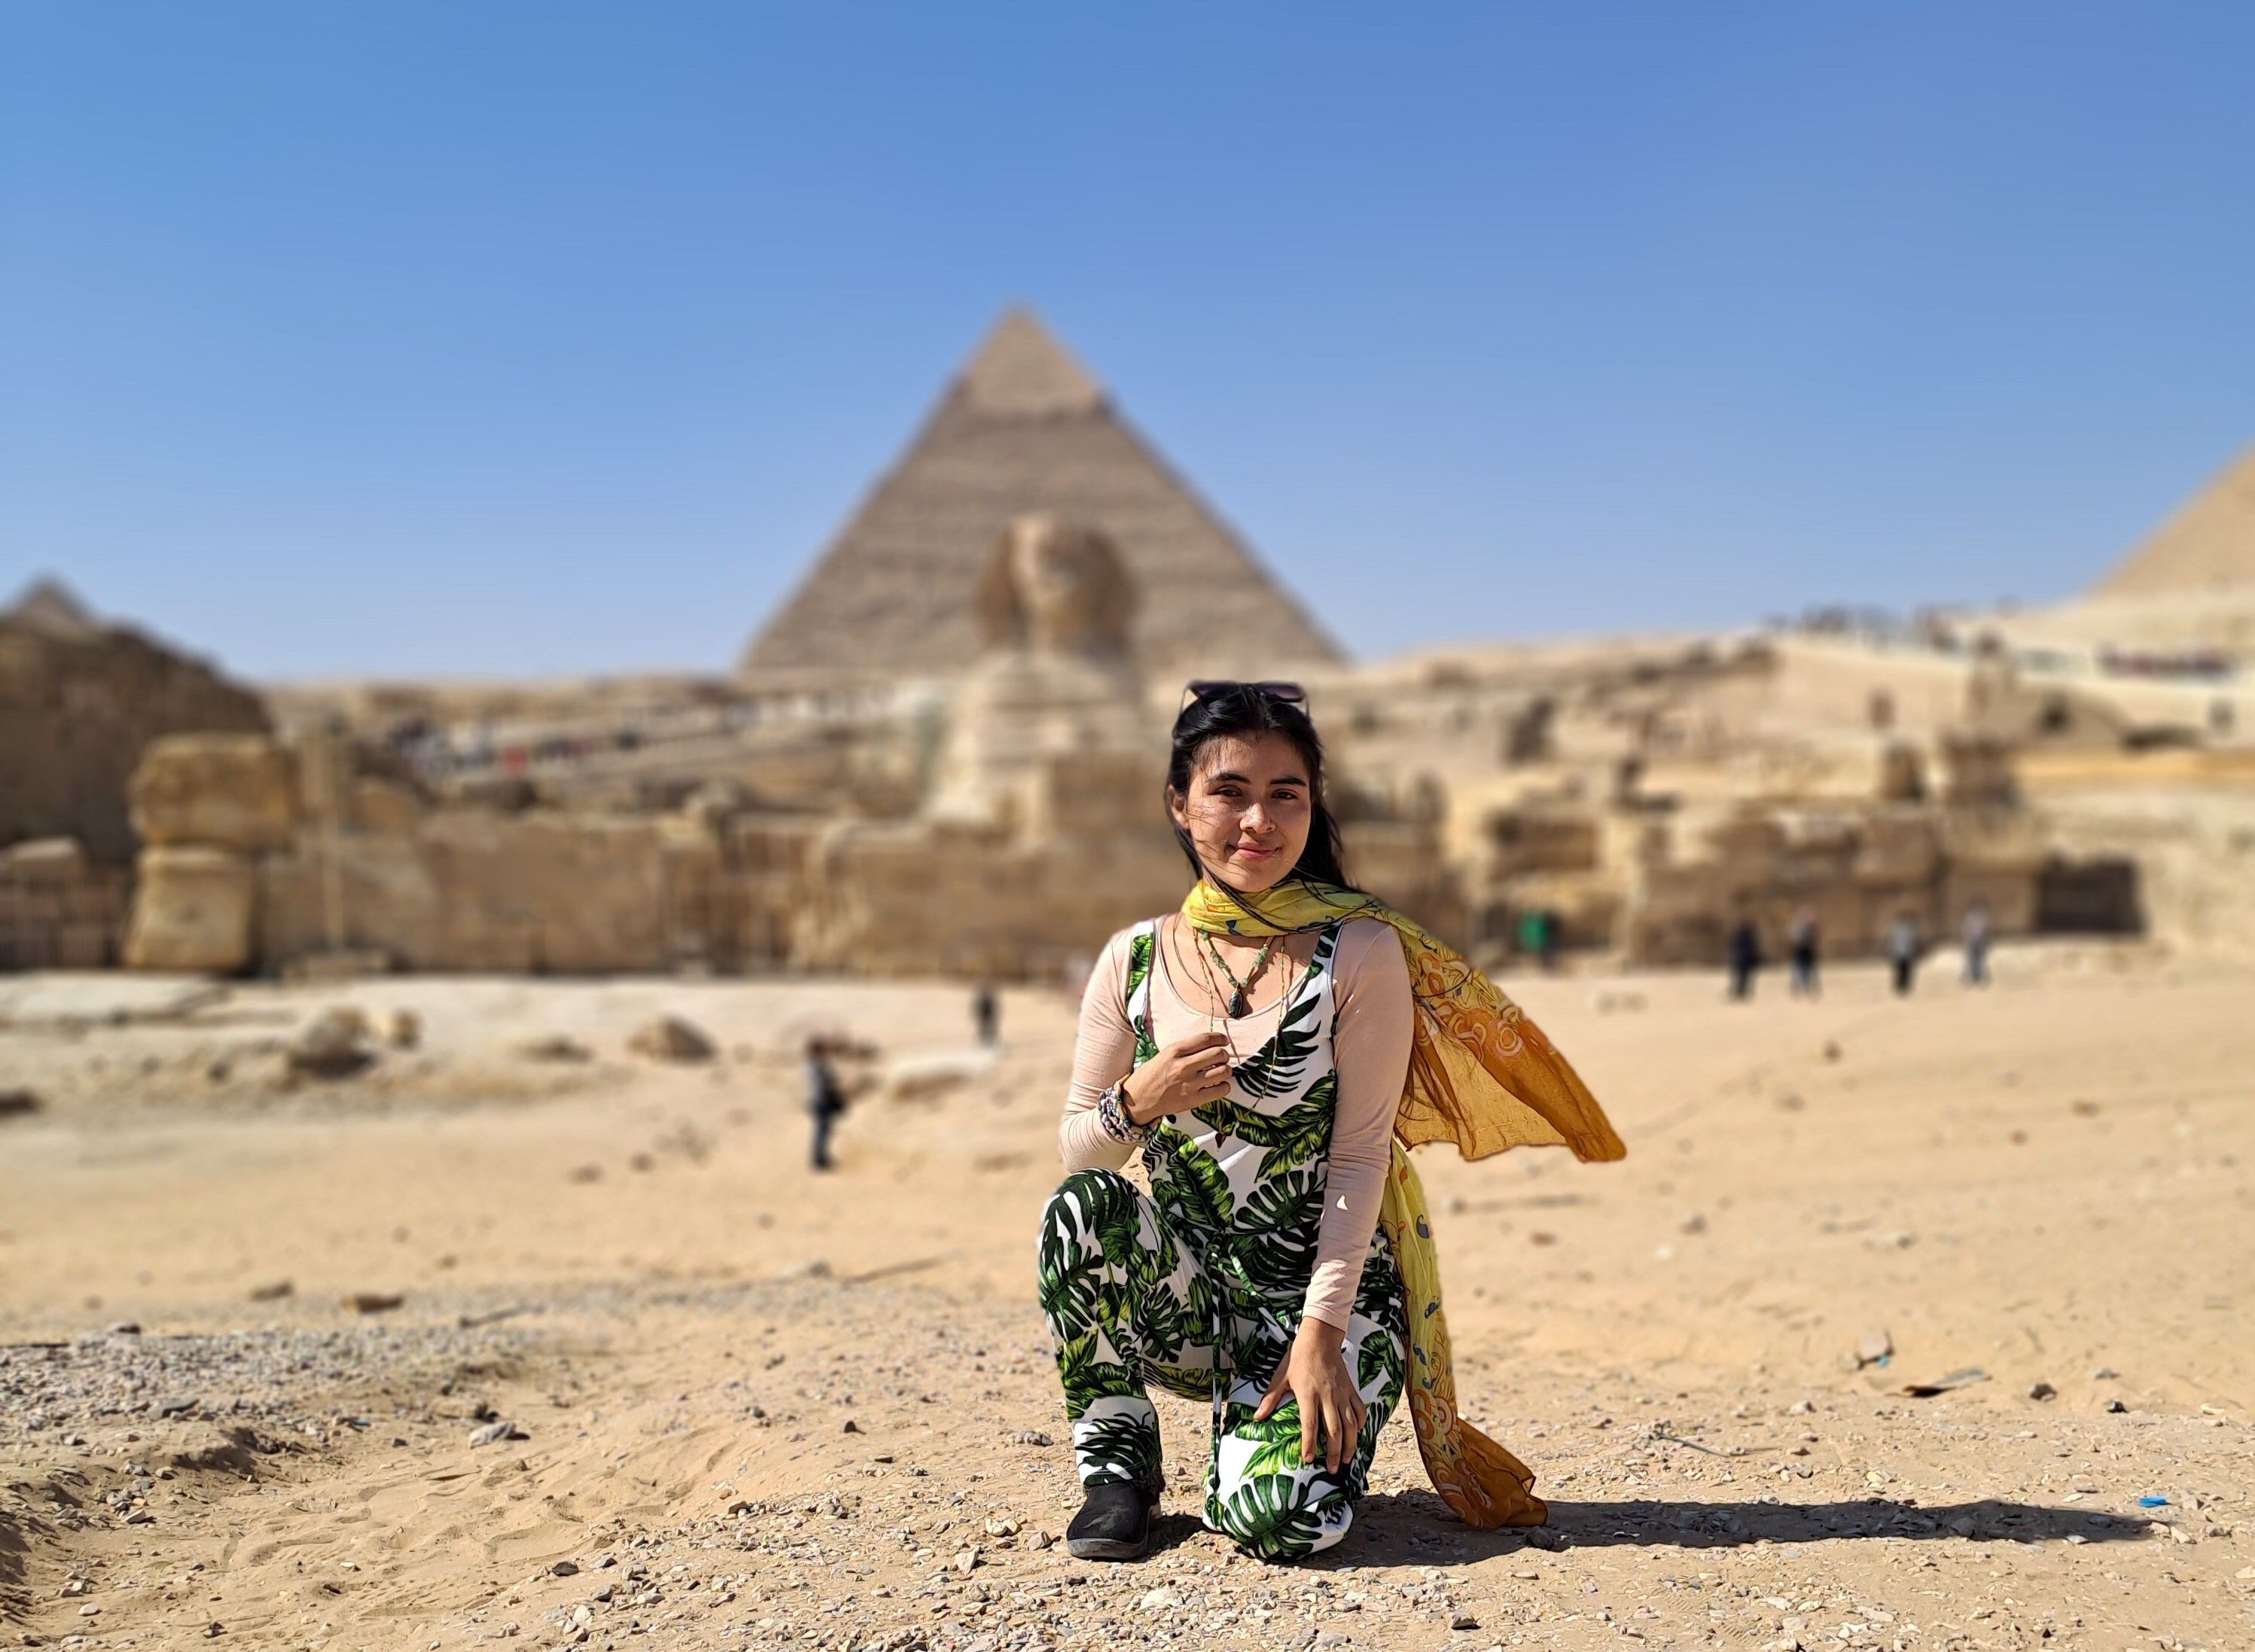 Reina Salguero Morales durante un paseo a las pirámides de Giza en El Cairo, el 7 de noviembre. Fotografía: Jessica Vega Ortega para LN.